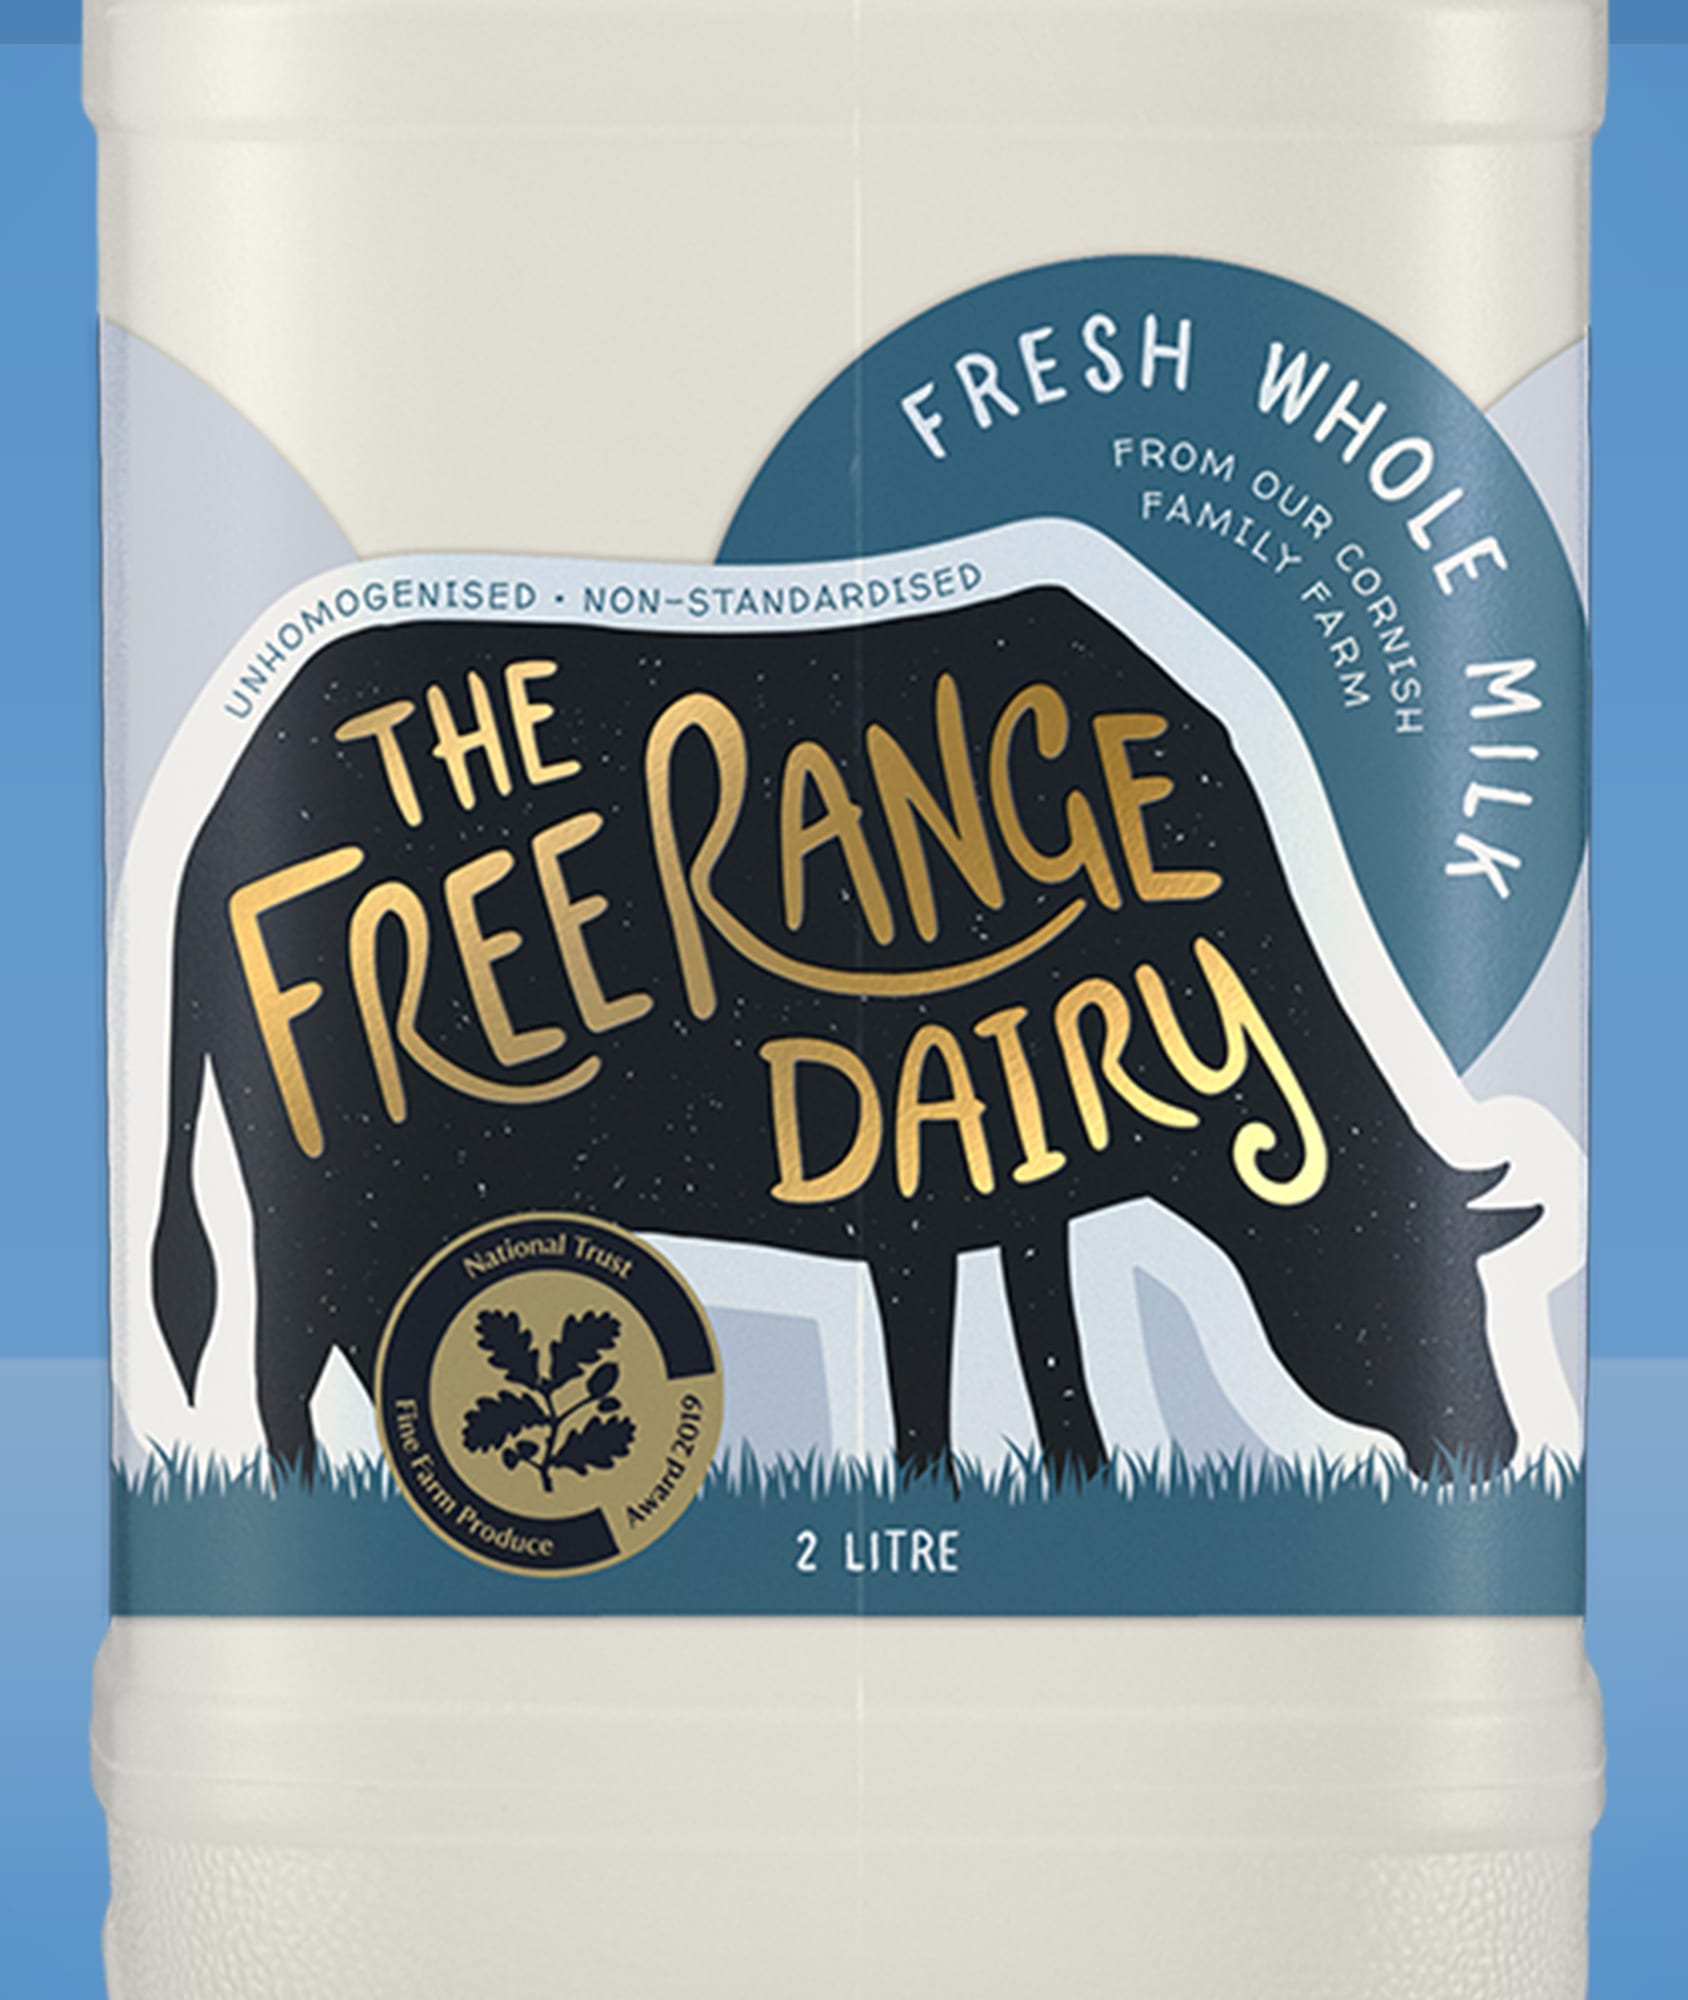 Free Range Dairy Cornish Milk Branding